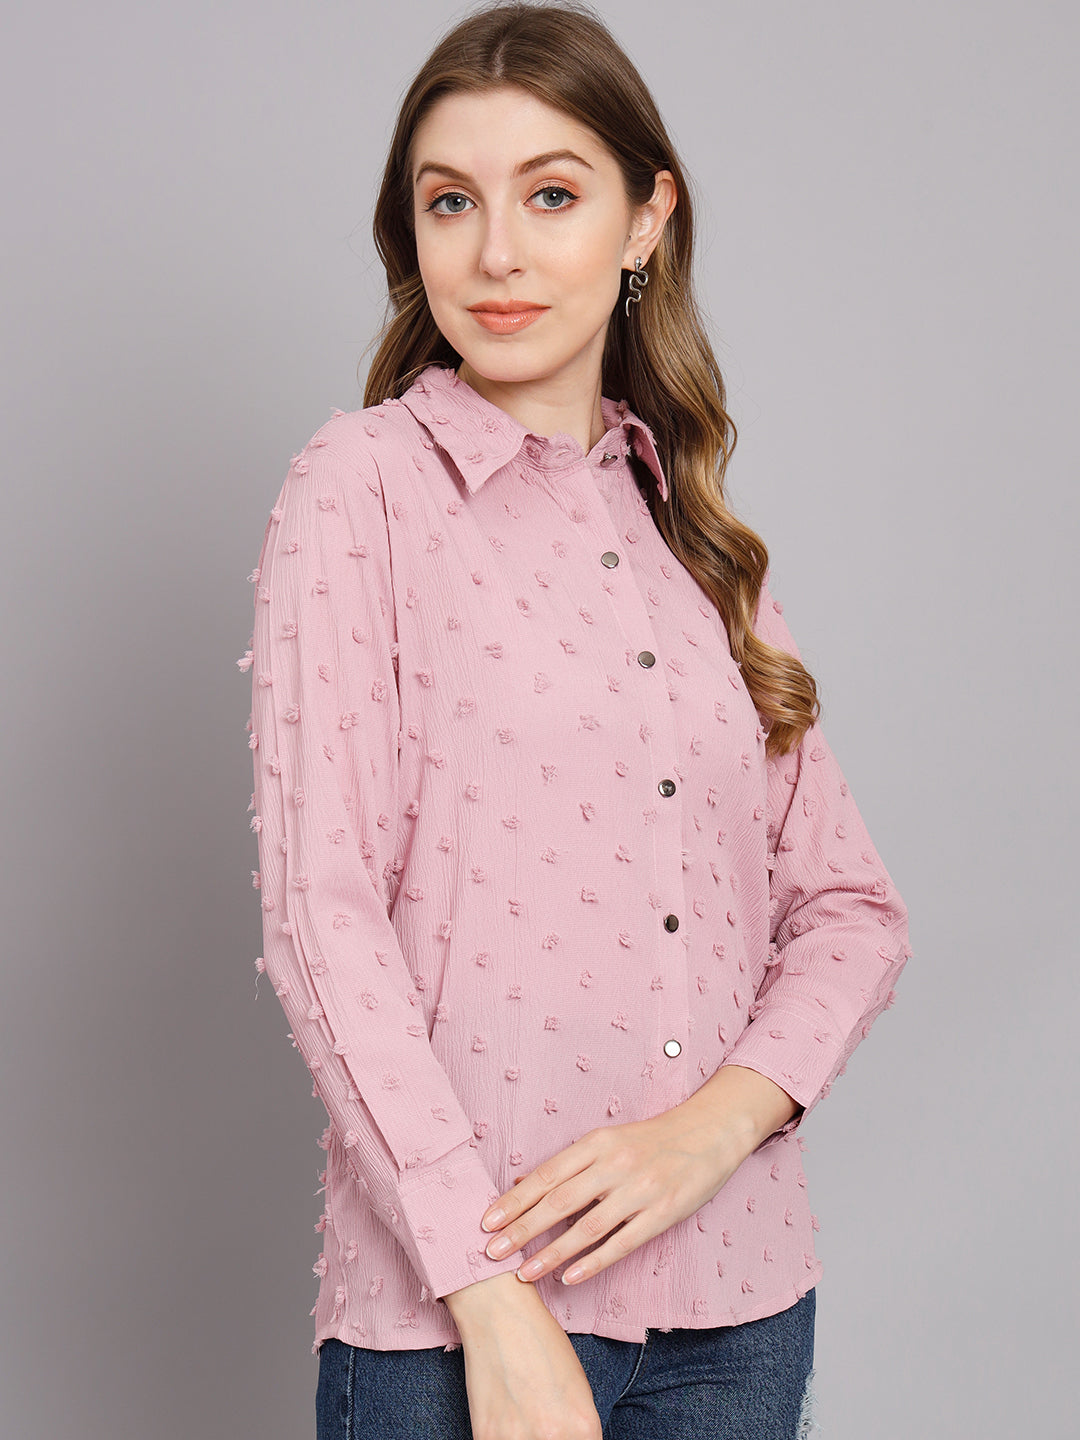 Women's Pink Chiffon Straight Shirt